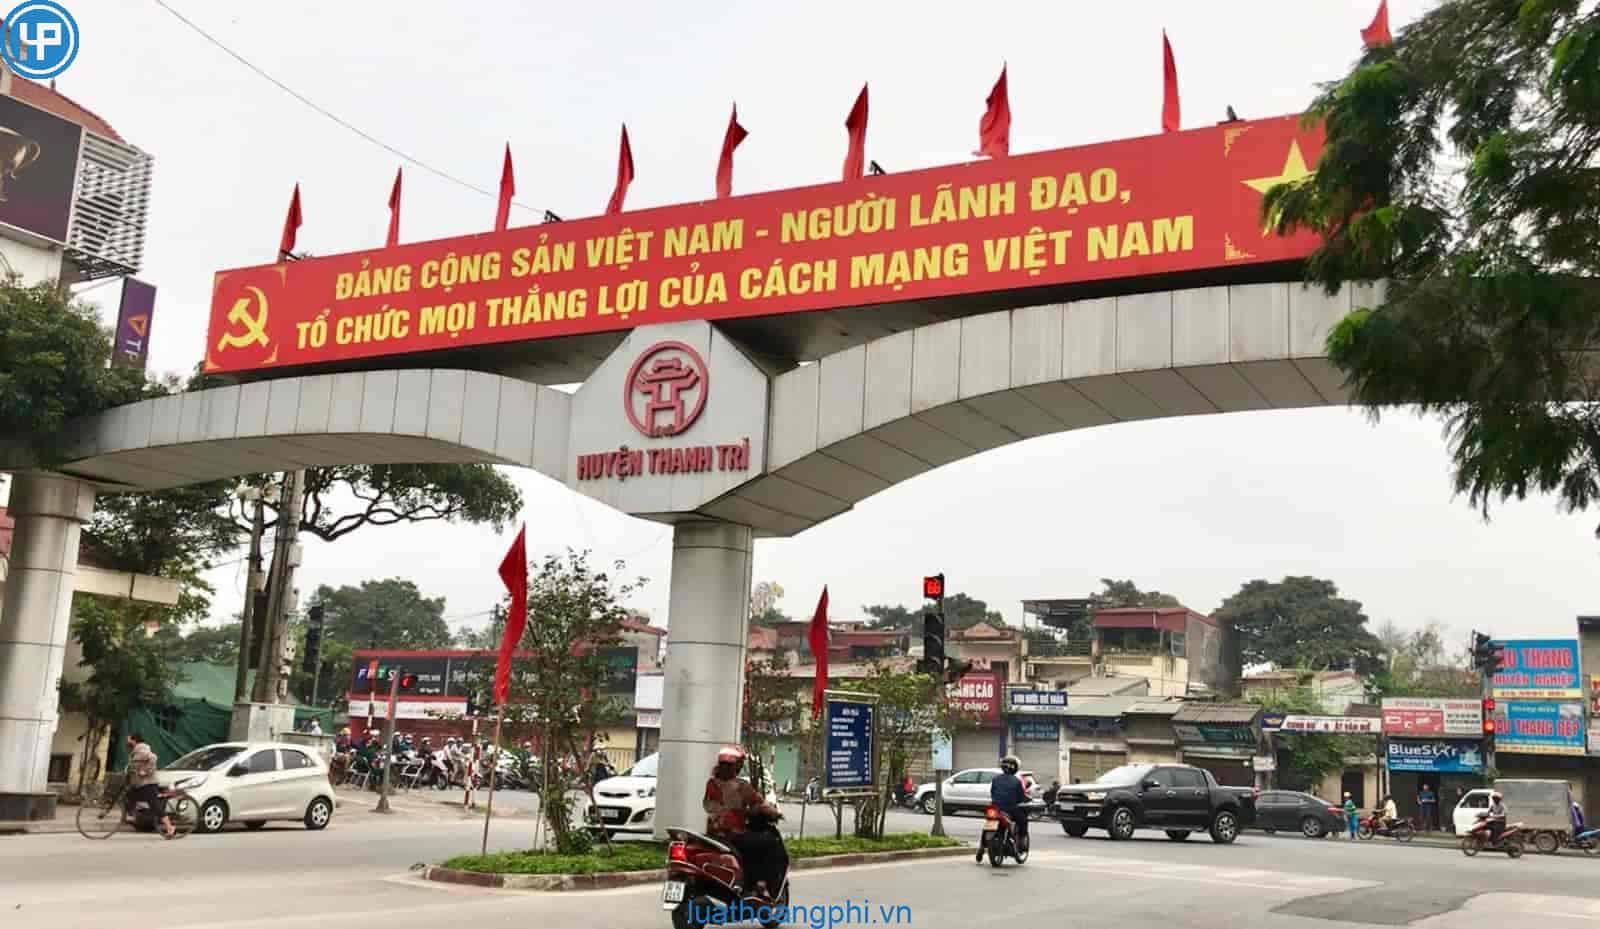  Số điện thoại, Địa chỉ Bảo hiểm xã hội huyện Thanh Trì, Hà Nội